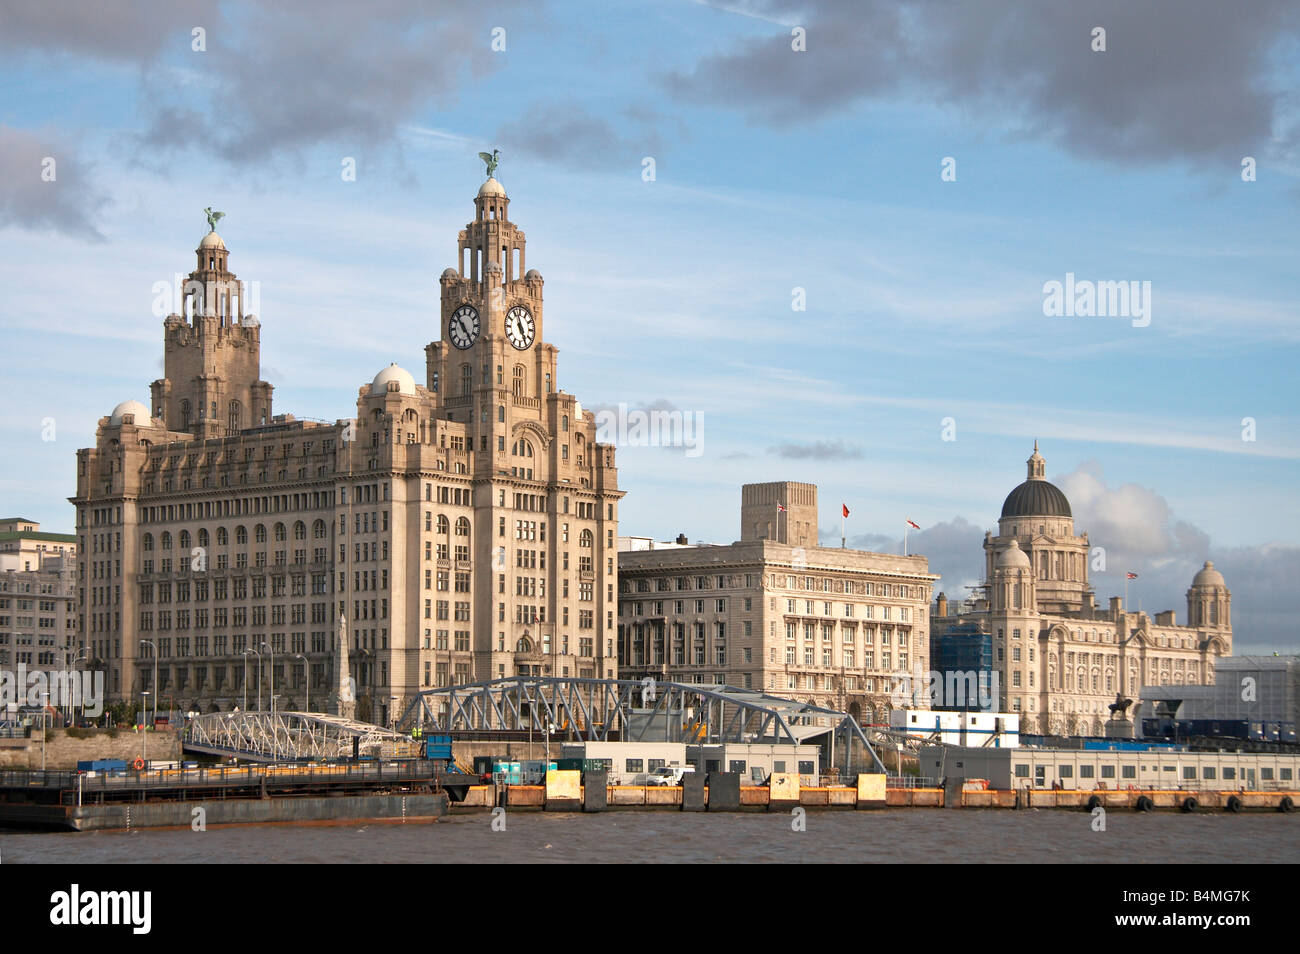 Royal Liver edifici, Cunard Building e il porto di Liverpool edificio, noto anche come "Le tre grazie". Liverpool, Regno Unito Foto Stock